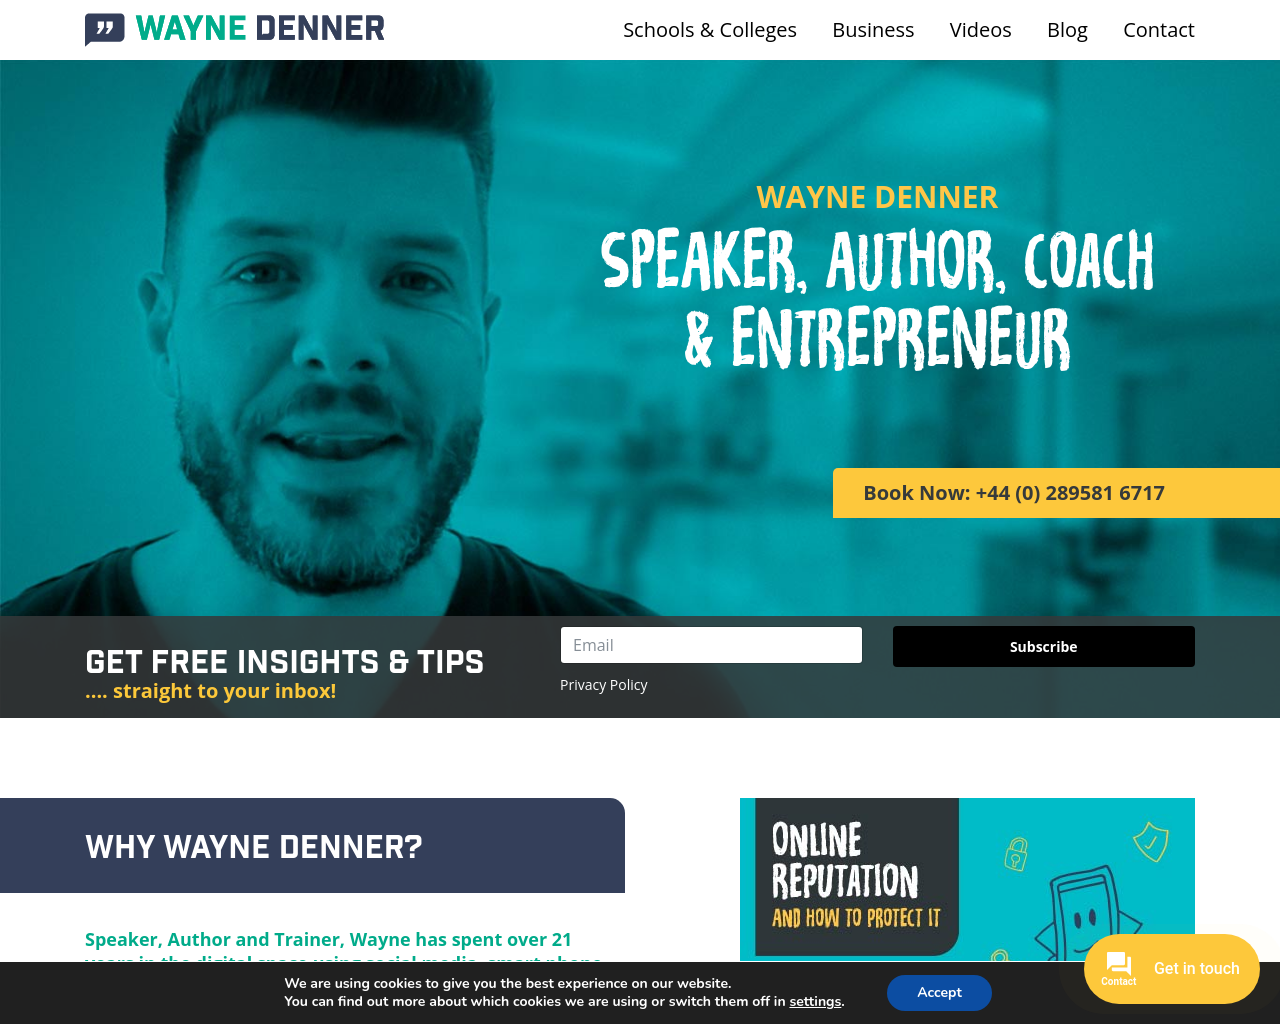 Wayne Denner website - Internet Safety for parents and schools